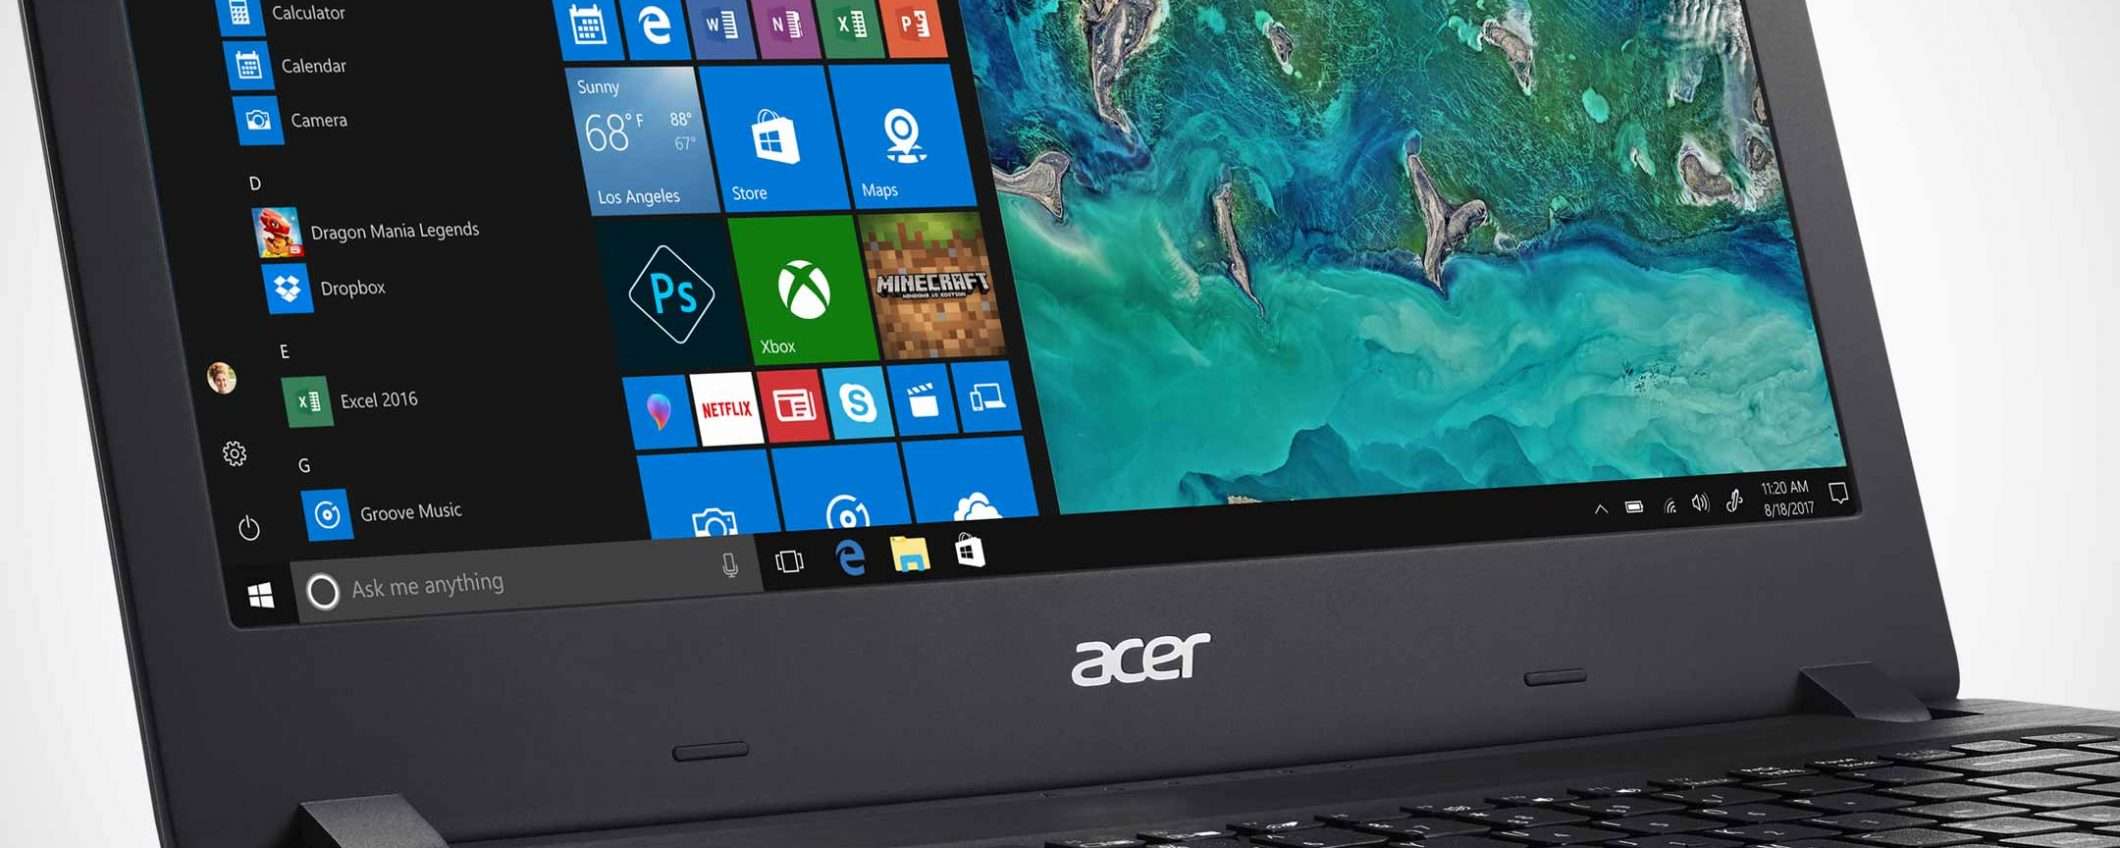 Il laptop Acer Aspire 1 oggi in sconto a 199 euro